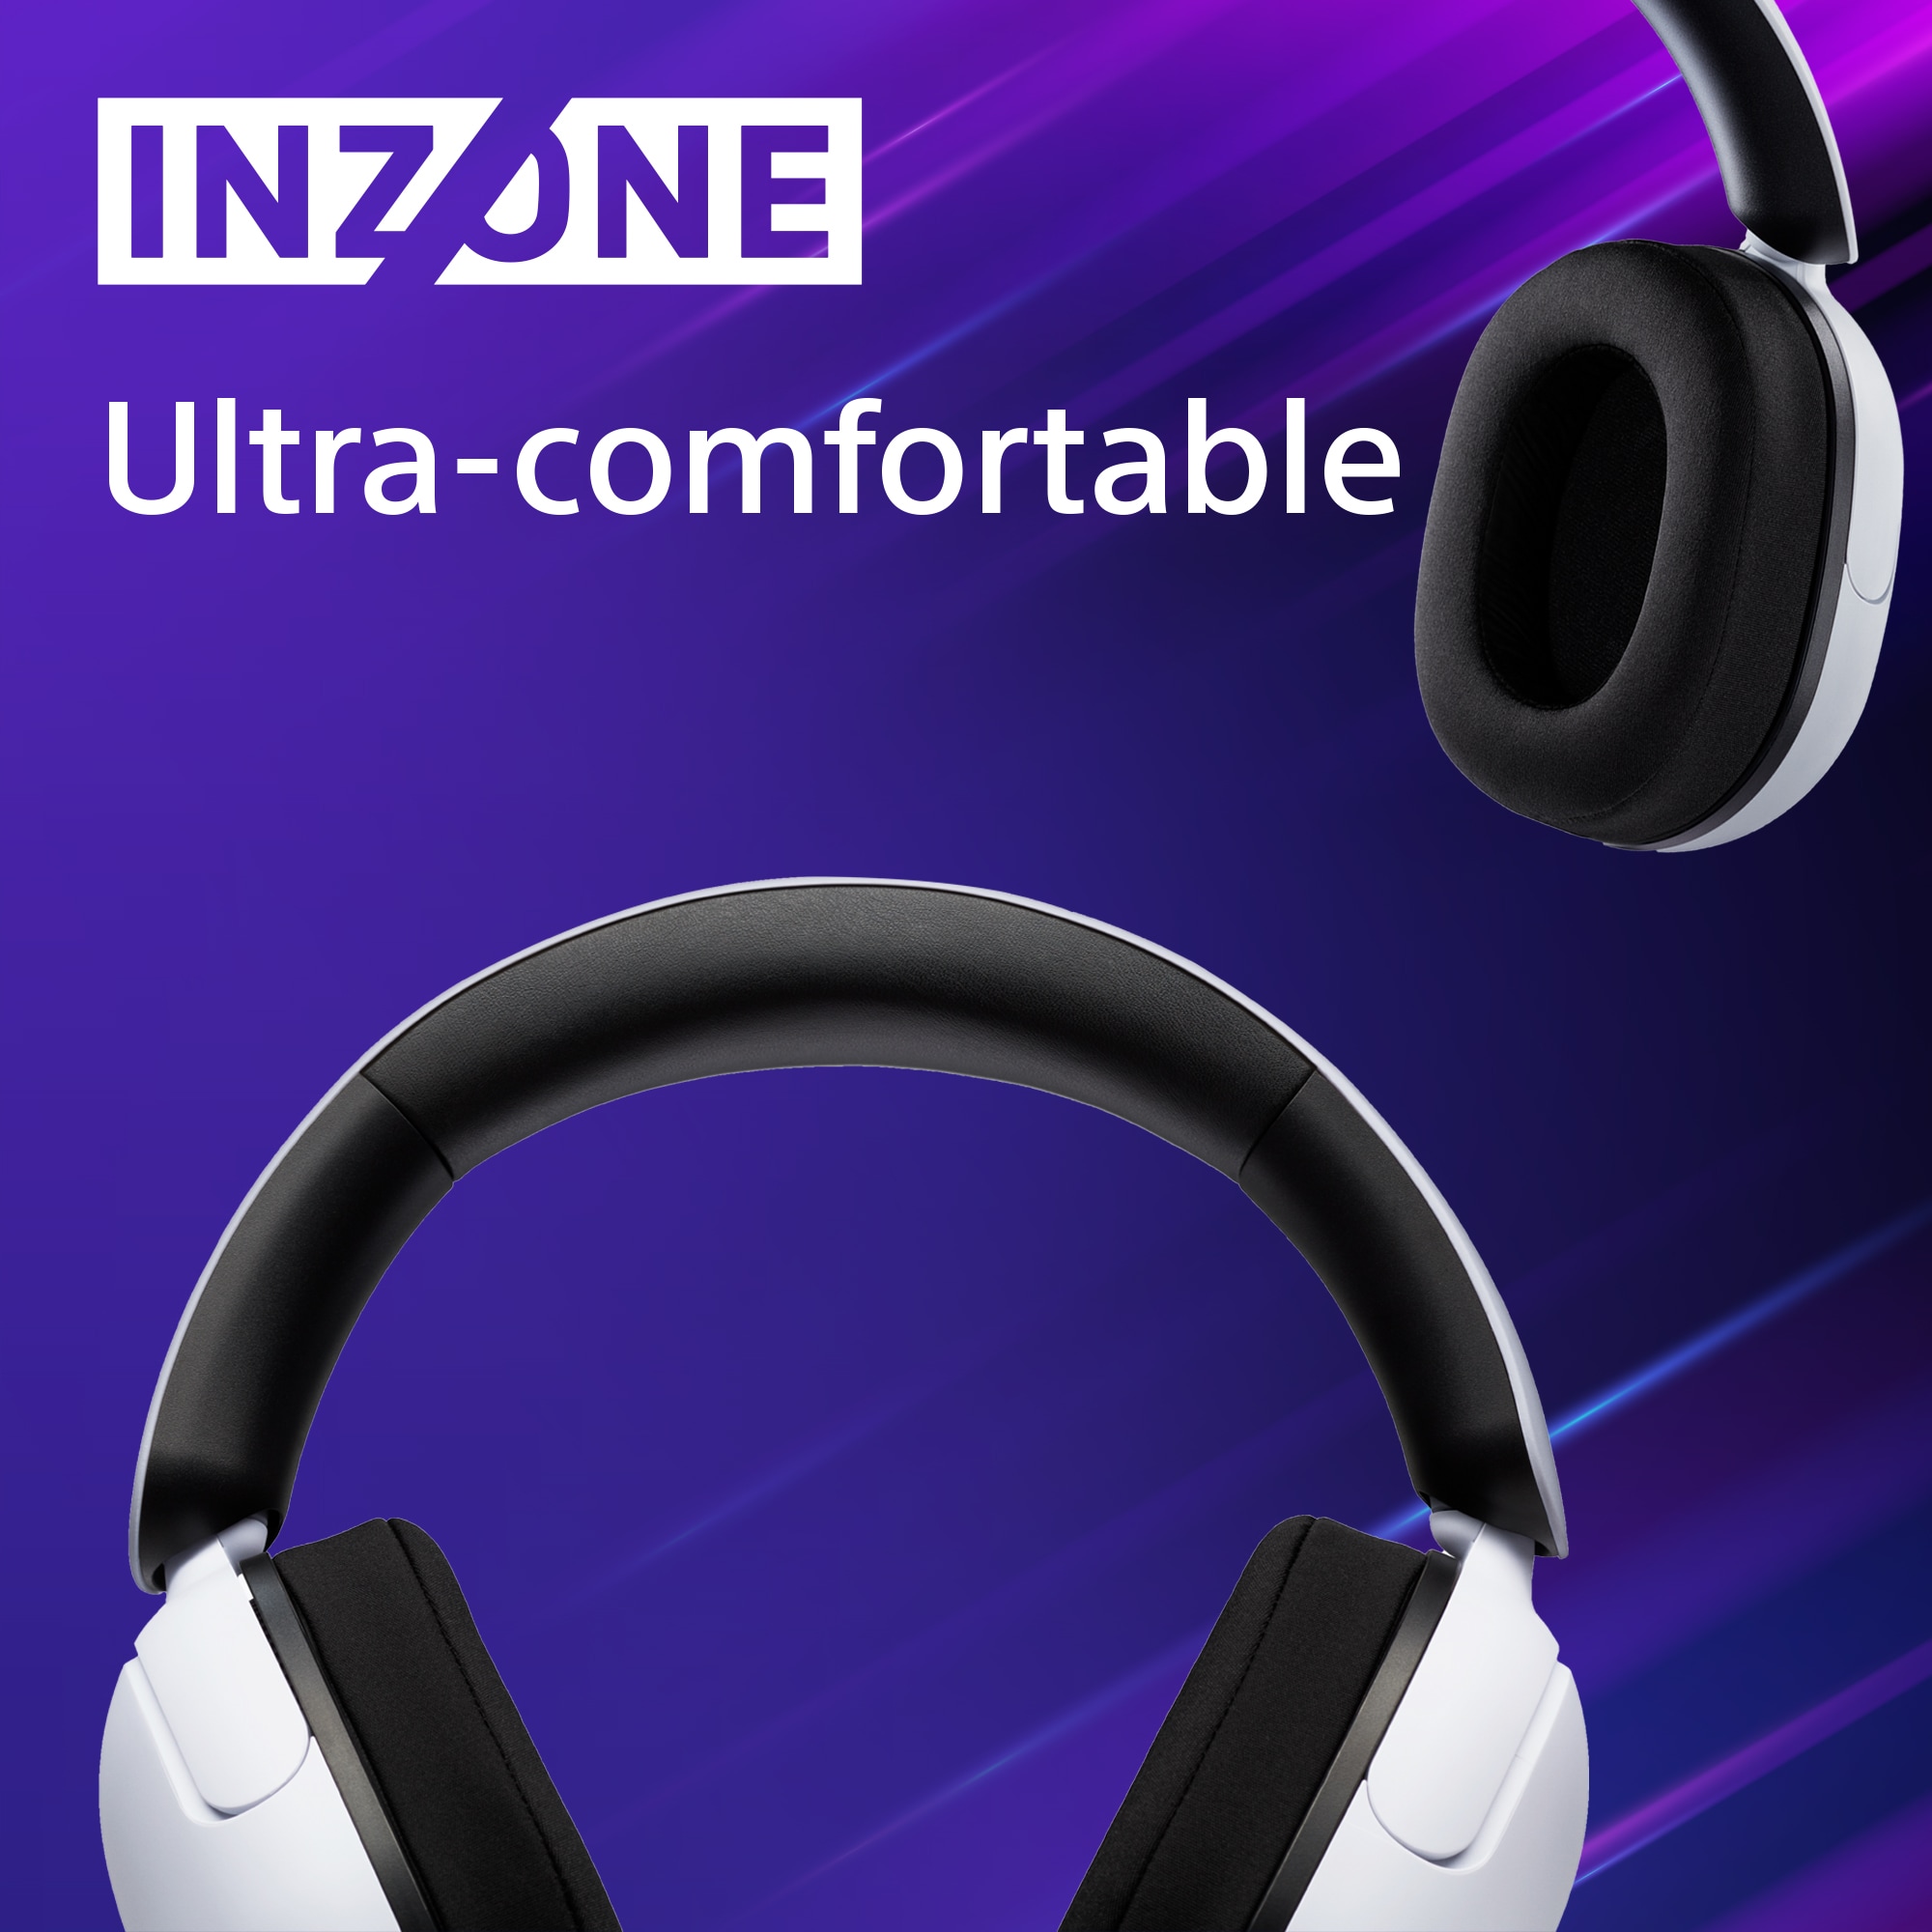 Sony Inzone hovedtelefoner på lilla baggrund